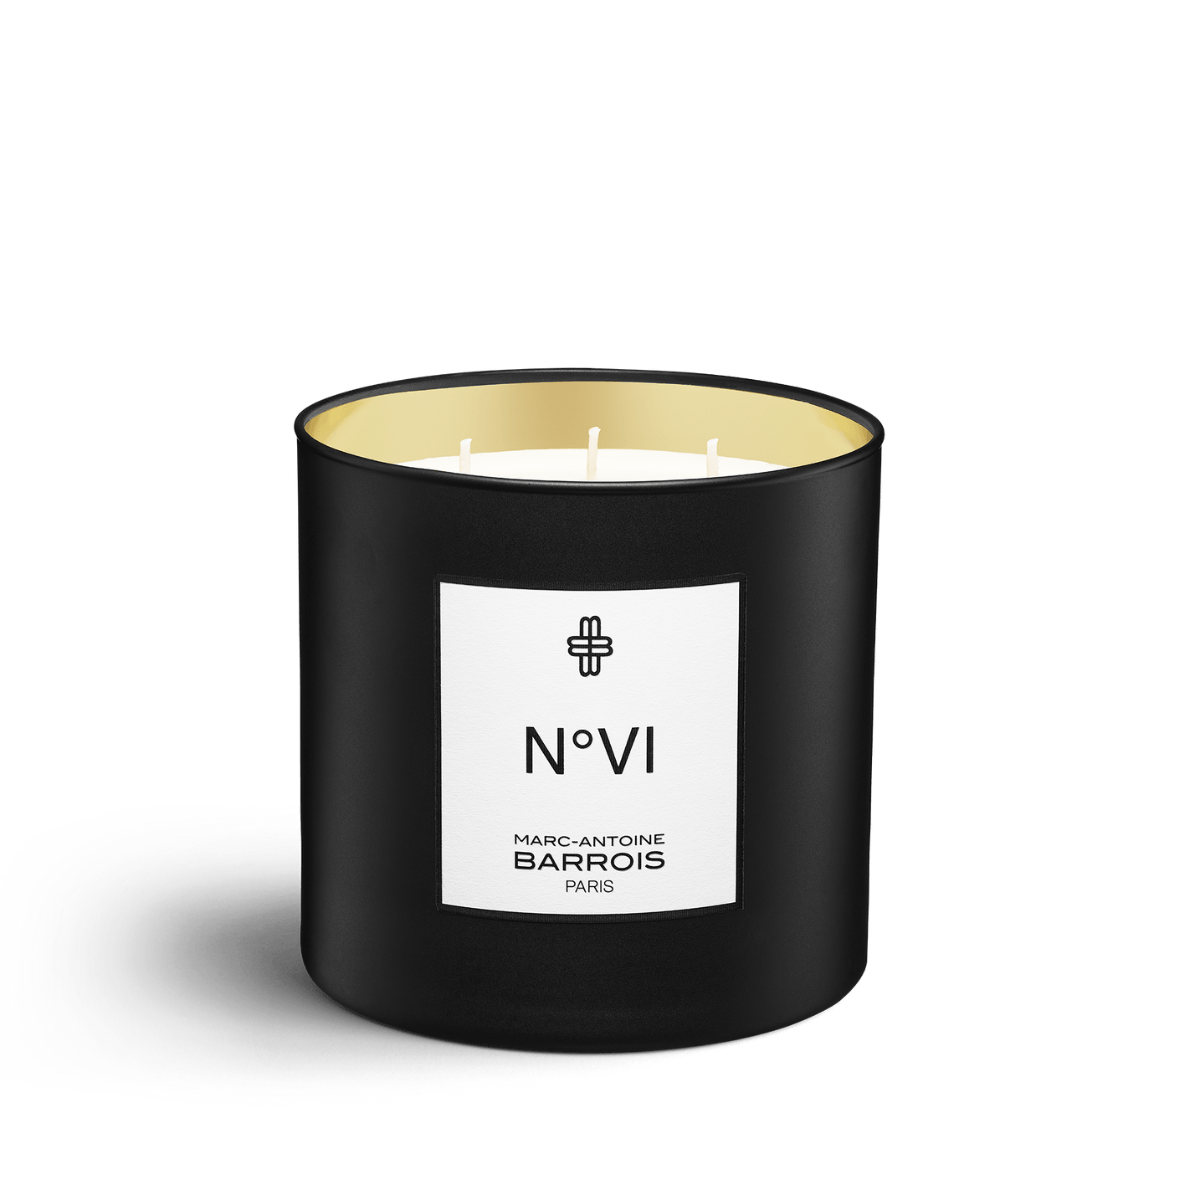 Afbeelding van No6 scented candle 220 gram van het merk Marc-Antoine Barrois